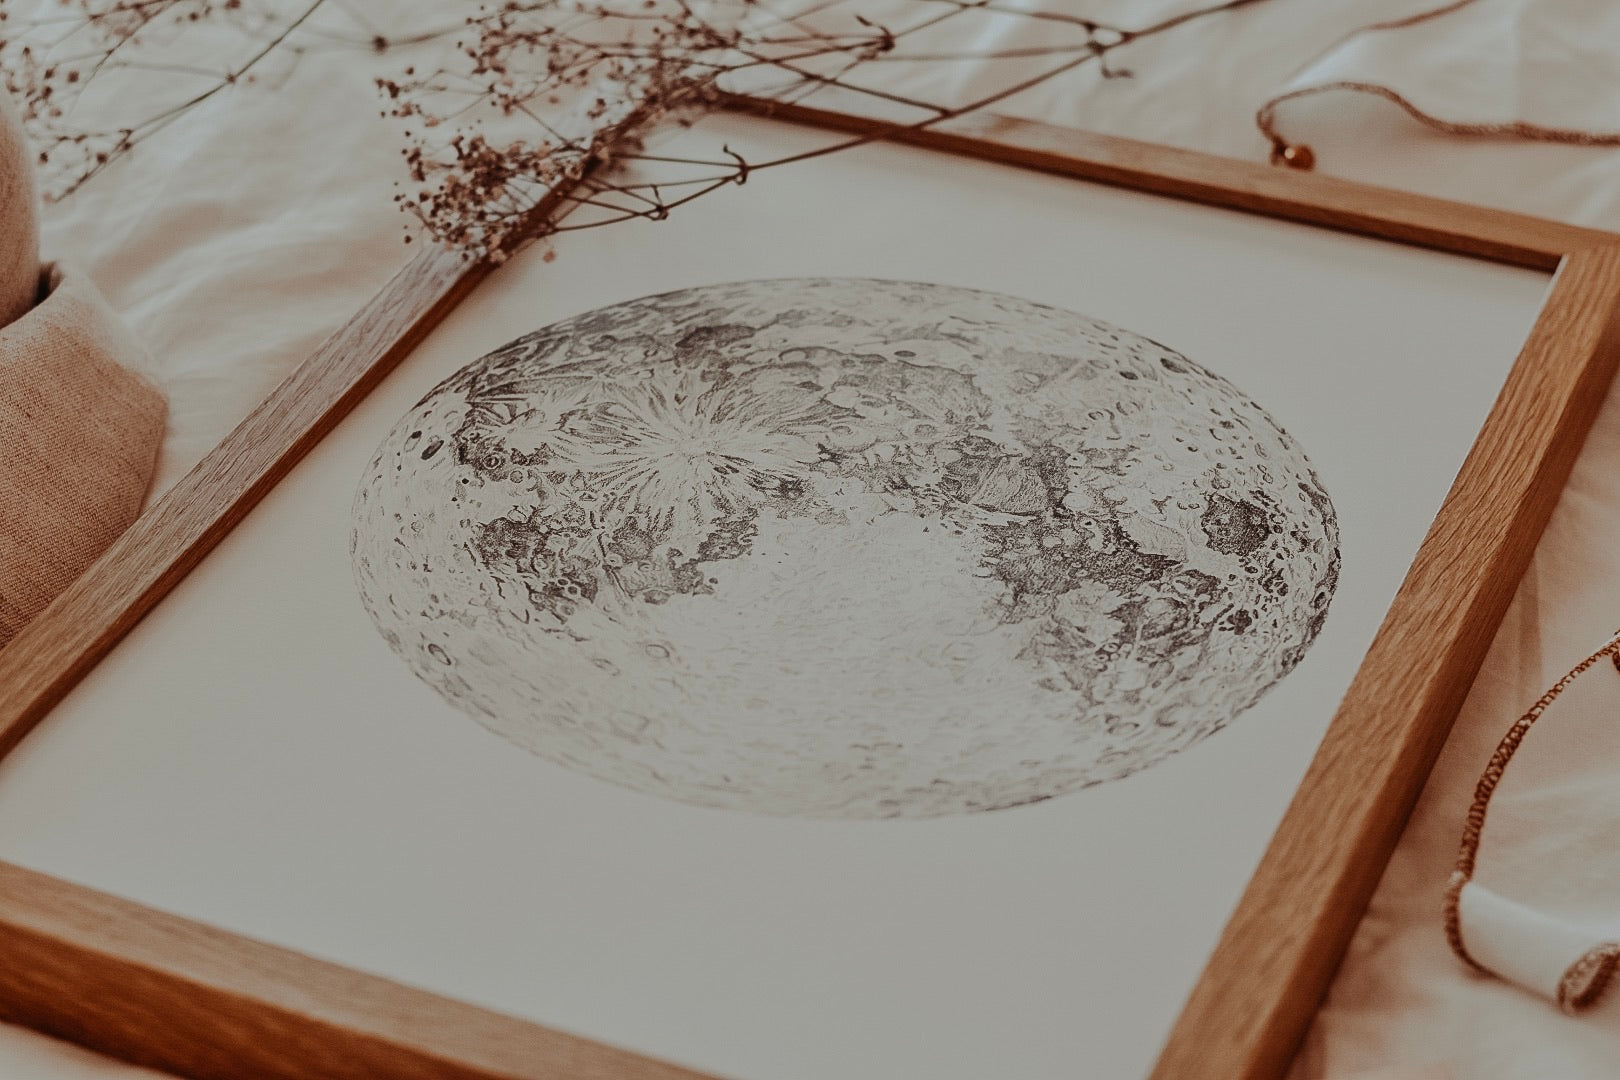 Moon Illustration